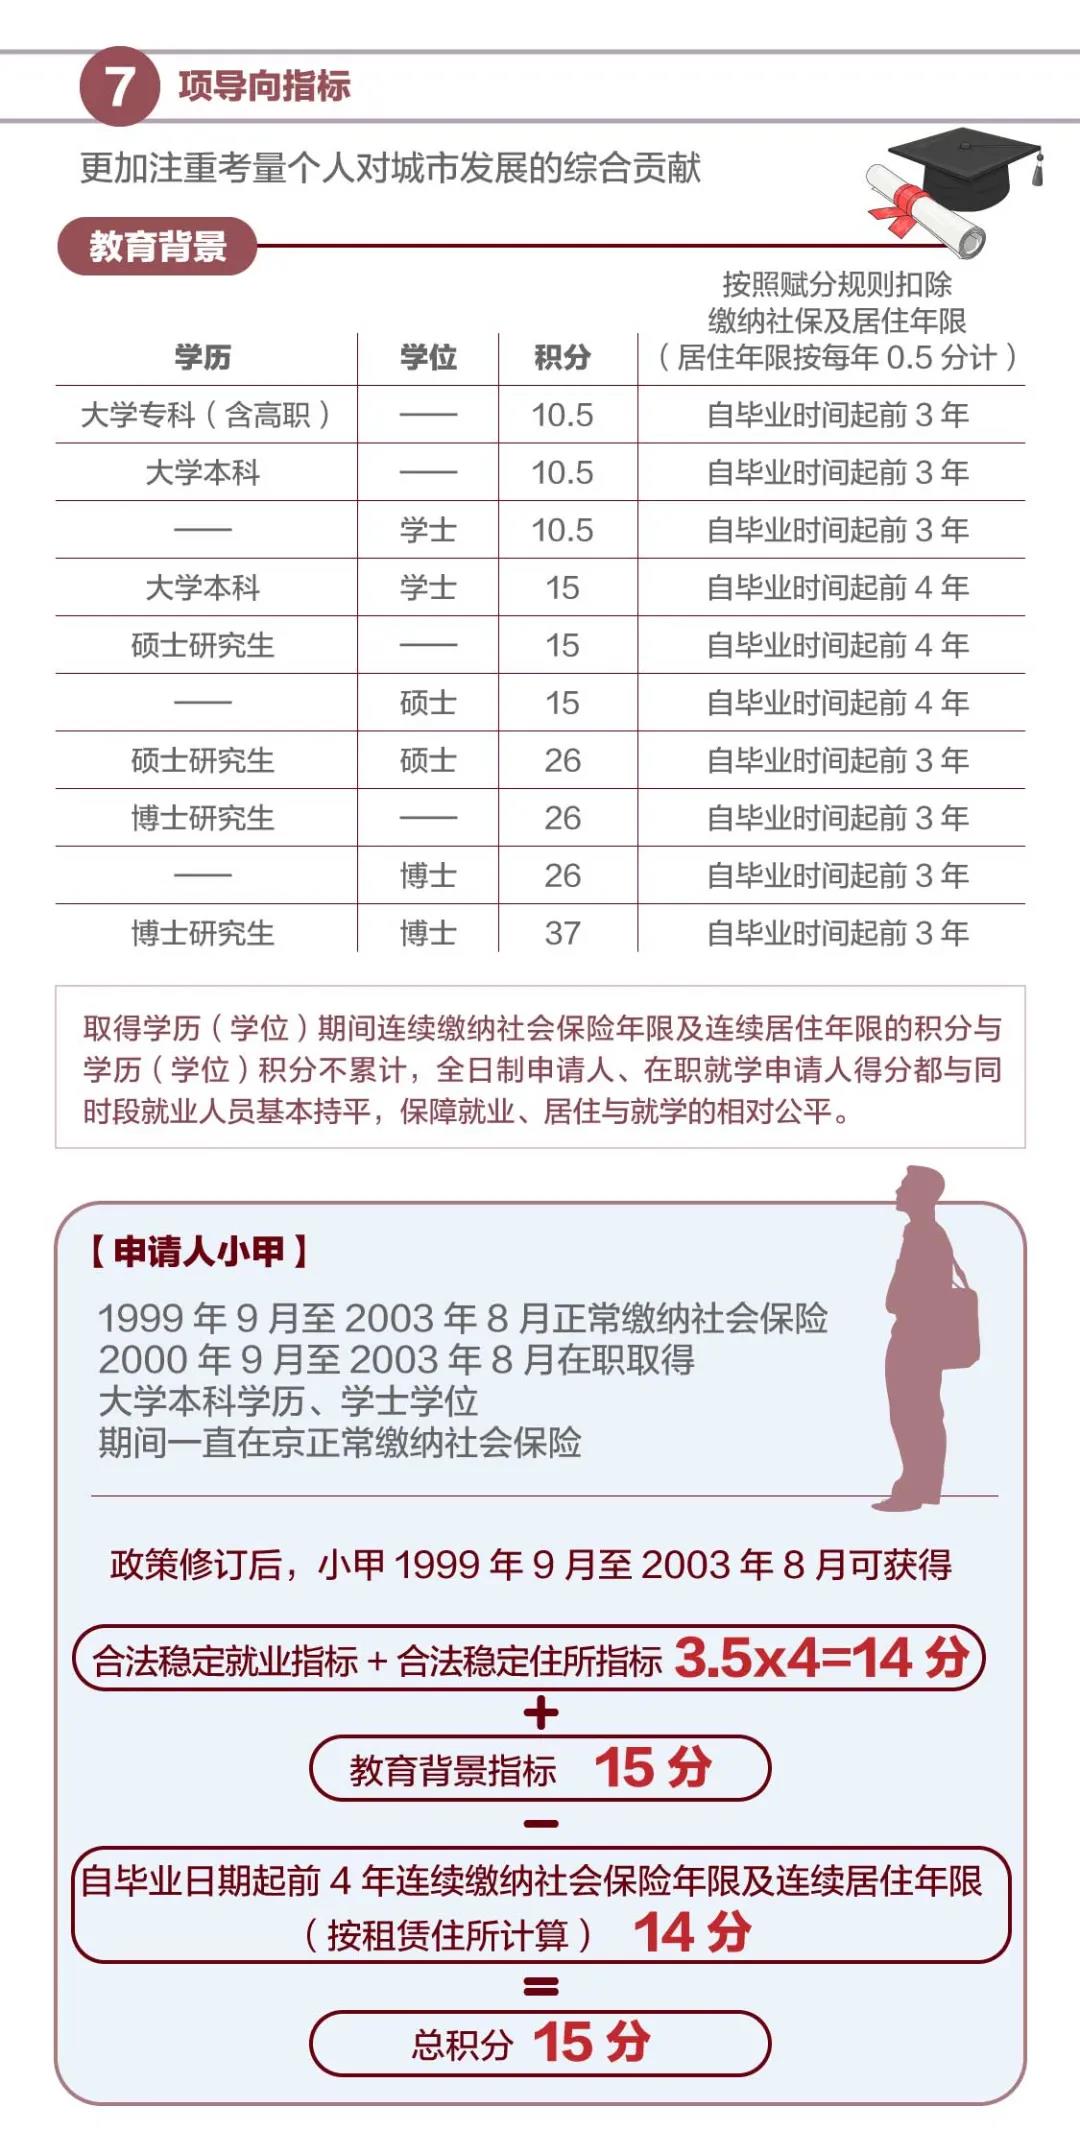 一图看懂新版北京积分落户政策-中国网地产